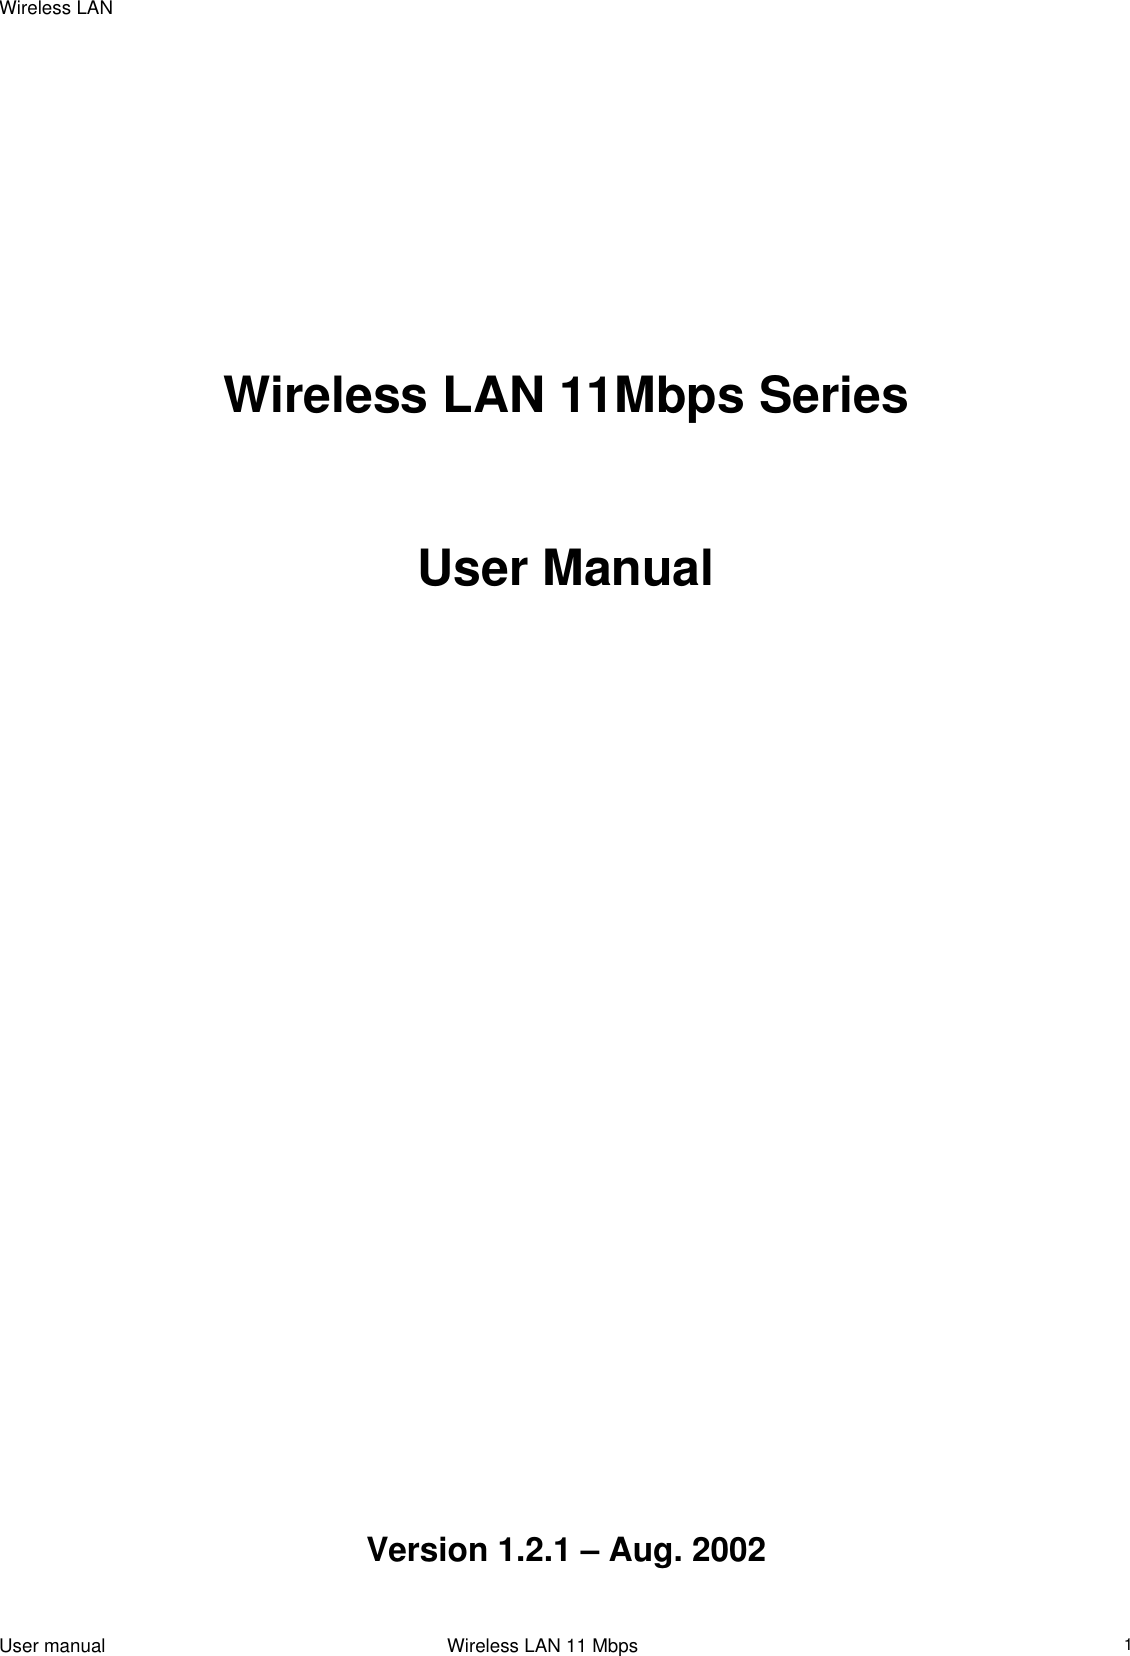 Wireless LAN                                                                                                                                                                                                        Wireless LAN 11Mbps Series     User Manual                                  Version 1.2.1 – Aug. 2002 User manual                                                                 Wireless LAN 11 Mbps   1